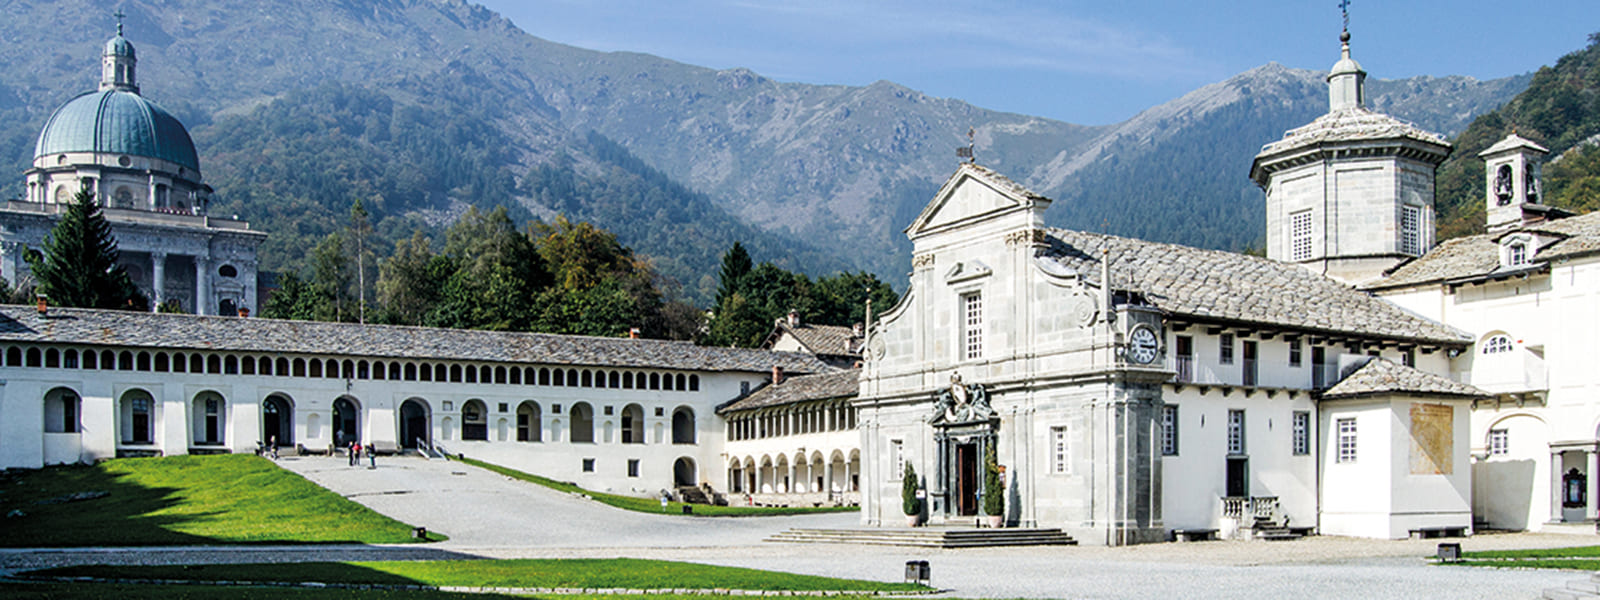 Piemonte - Tra borghi e santuari